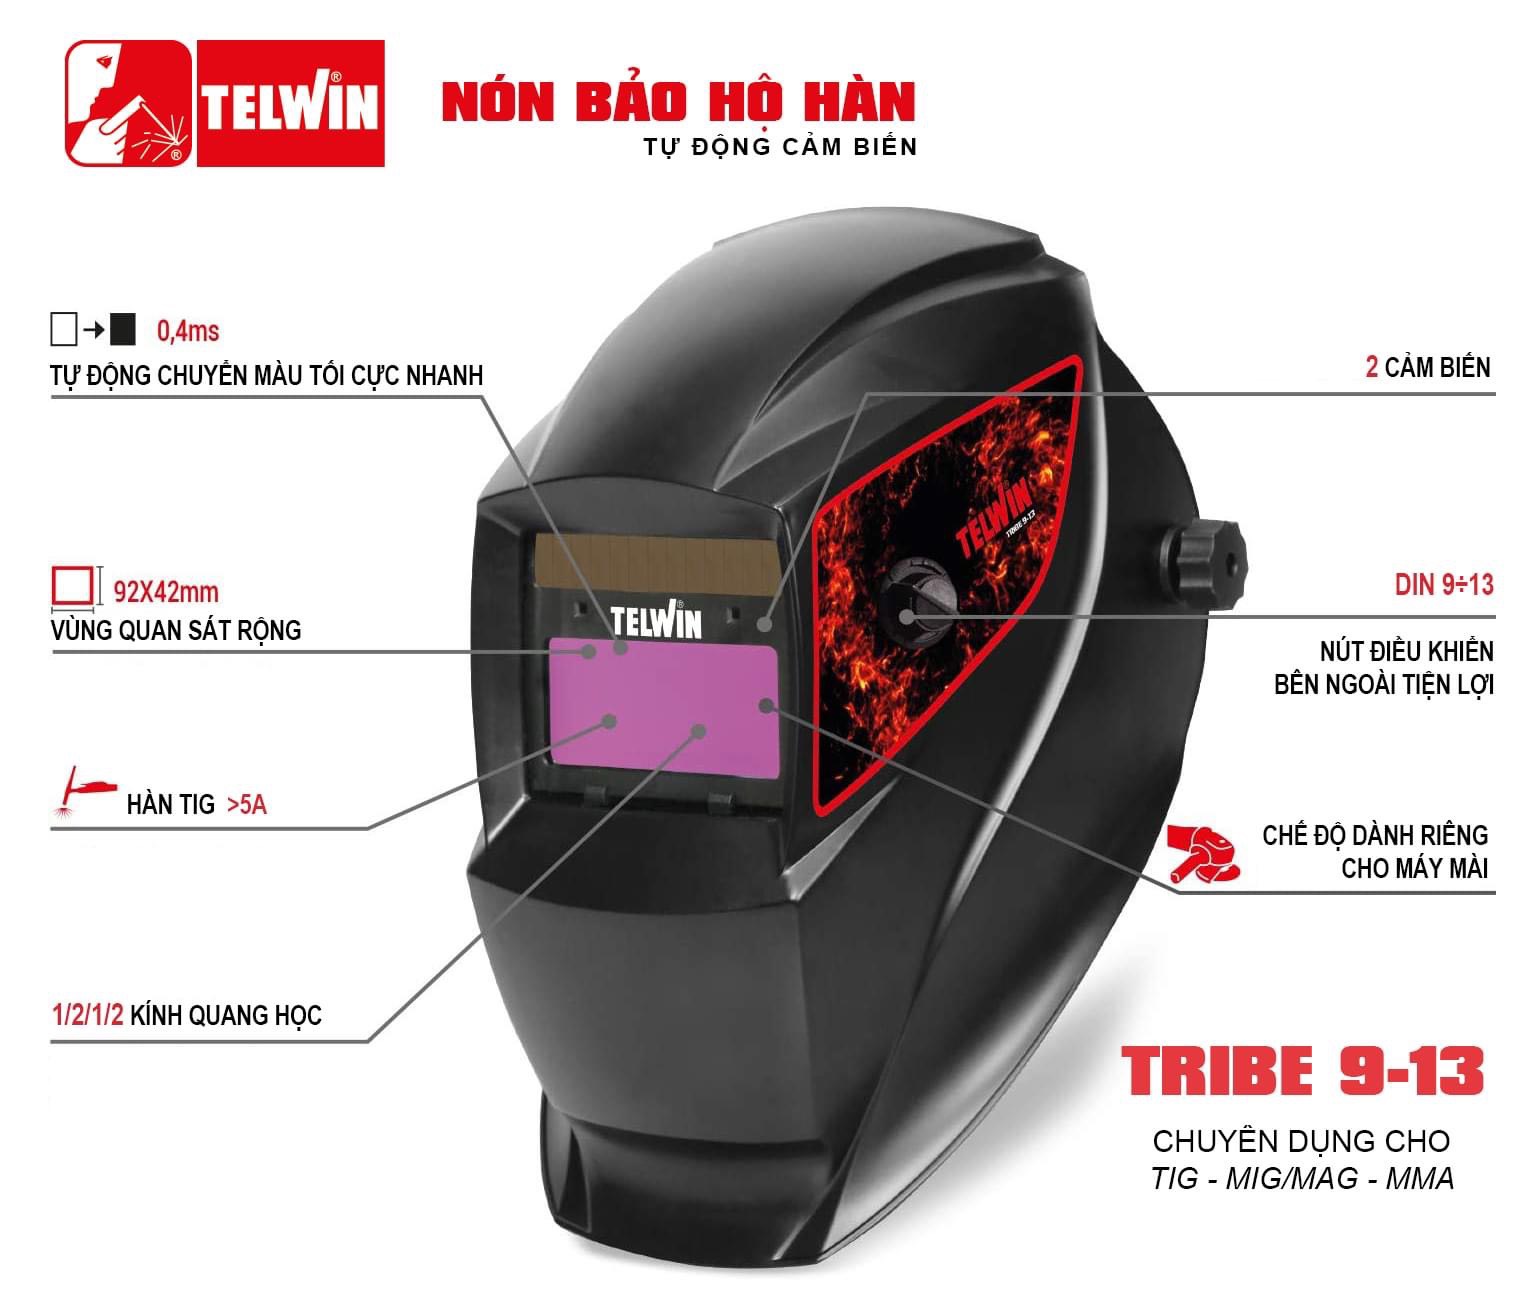 Mũ Hàn Tự Động Telwin TRIBE 9-13 (Chuyên dụng cho hàn MMA/TIG/MIG)